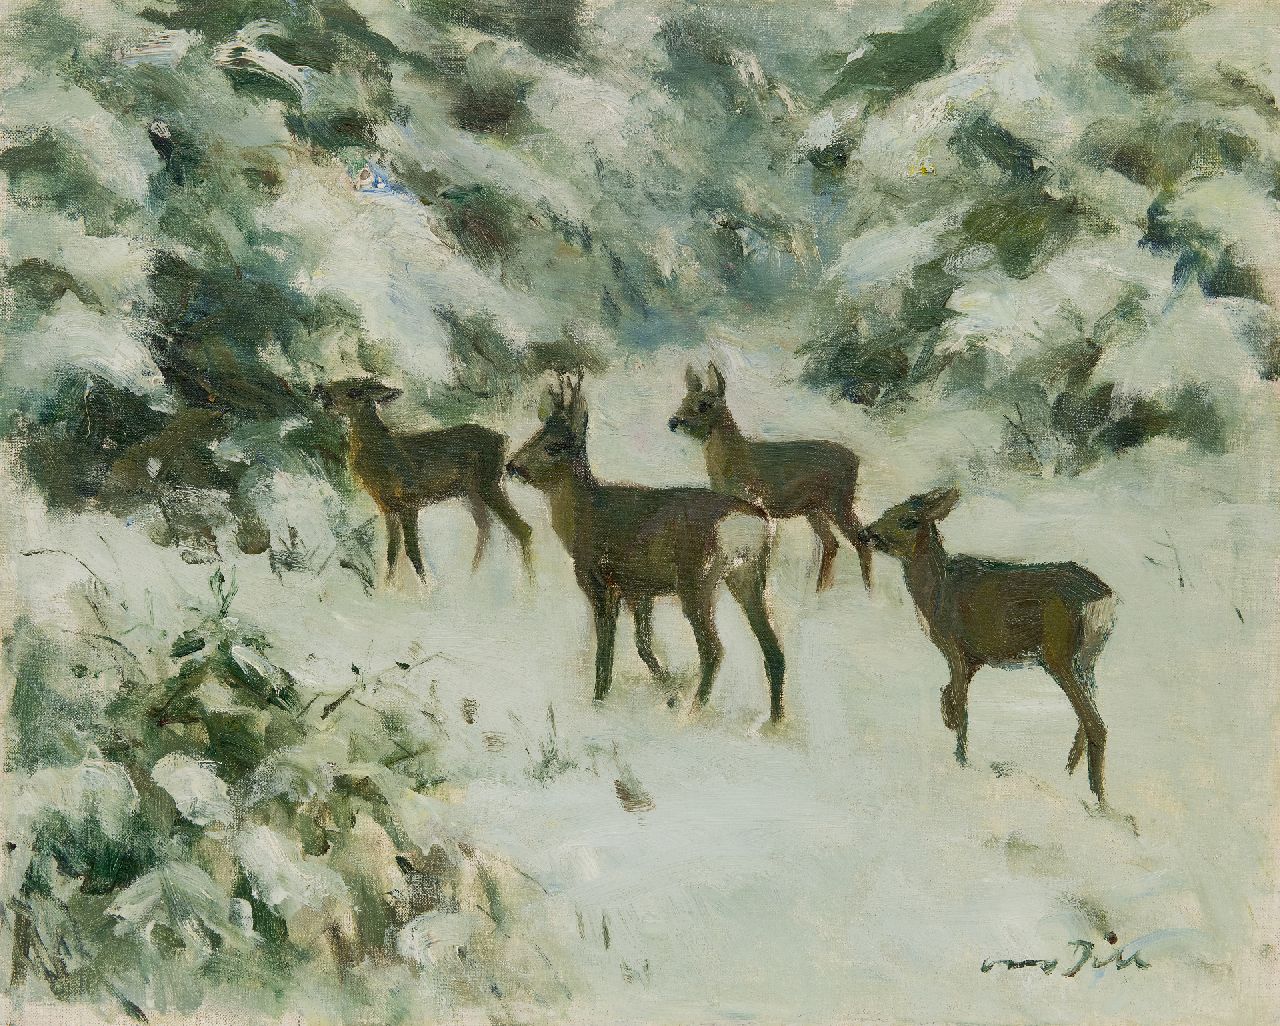 Otto Carl Wilhelm Dill | Reeën in de sneeuw, olieverf op doek, 40,2 x 50,0 cm, gesigneerd r.o.